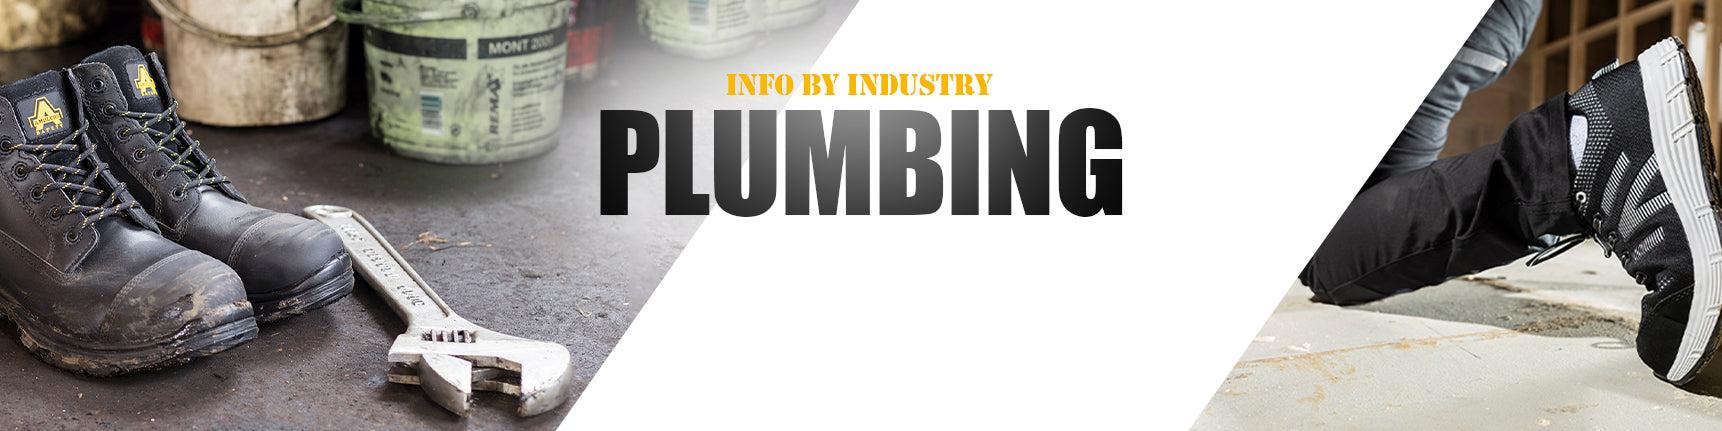 Plumbing-top-banner-Info